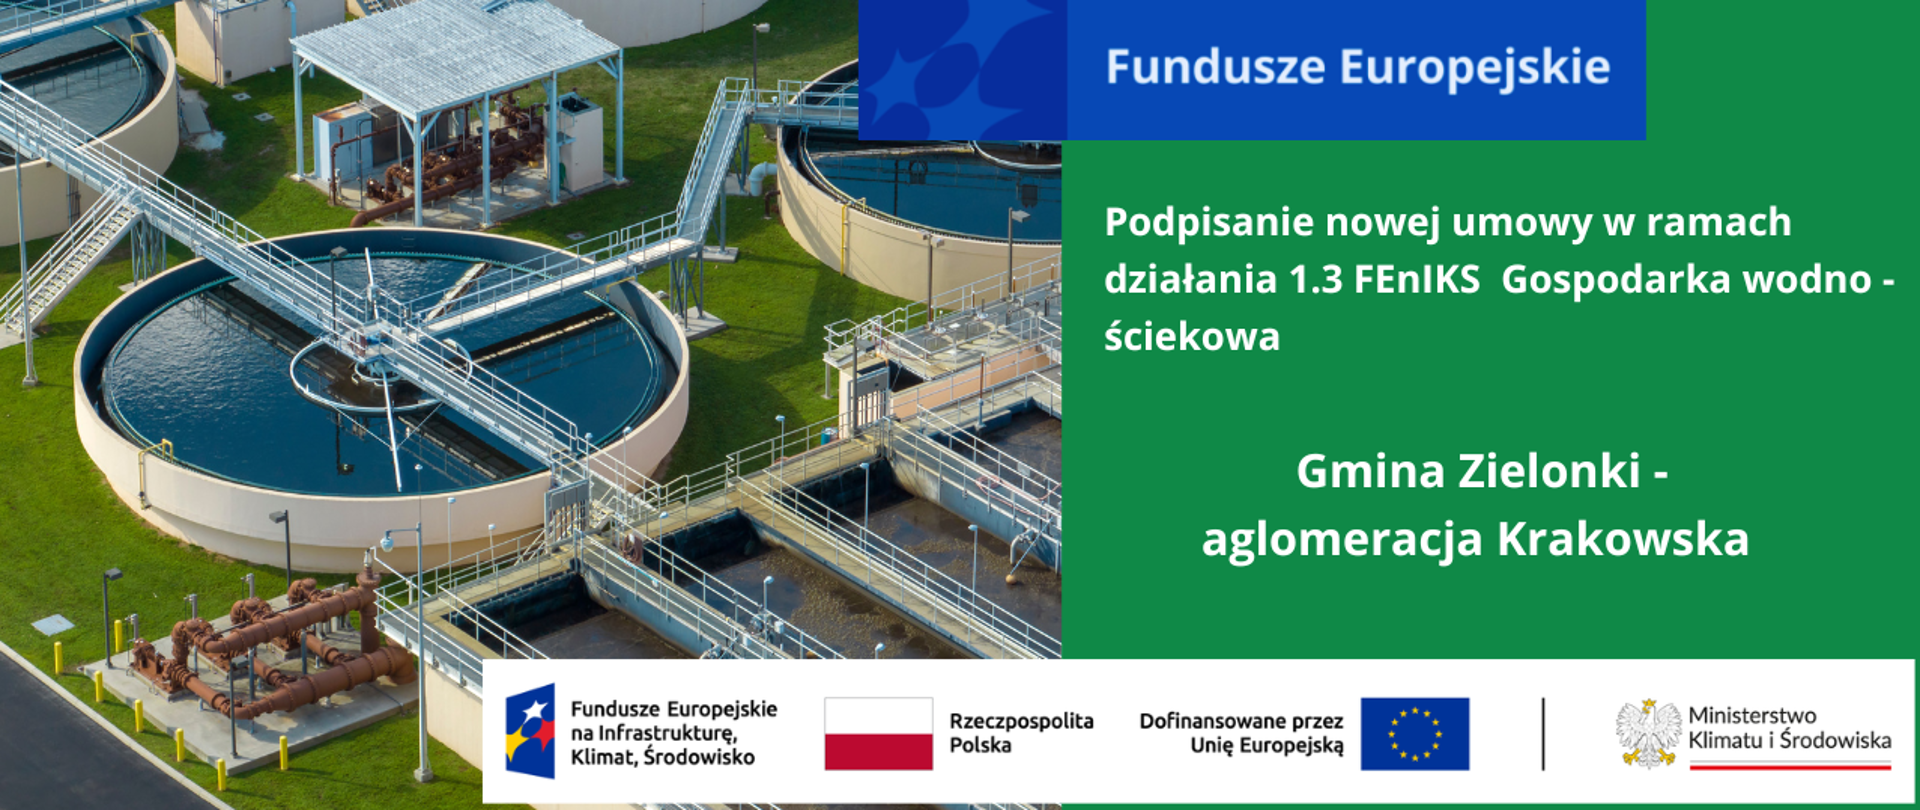 Po lewej stronie grafiki zbiorniki na wodę i infrastruktura techniczna nowoczesnej oczyszczalni ścieków, po stronie prawej umieszczone na zielonym tle napisy podpisanie nowej umowy w ramach działania 1.3 FEnIKS Gospodraka wodno-ściekowa oraz Gmina Zielonki - aglomeracja Krakowska.